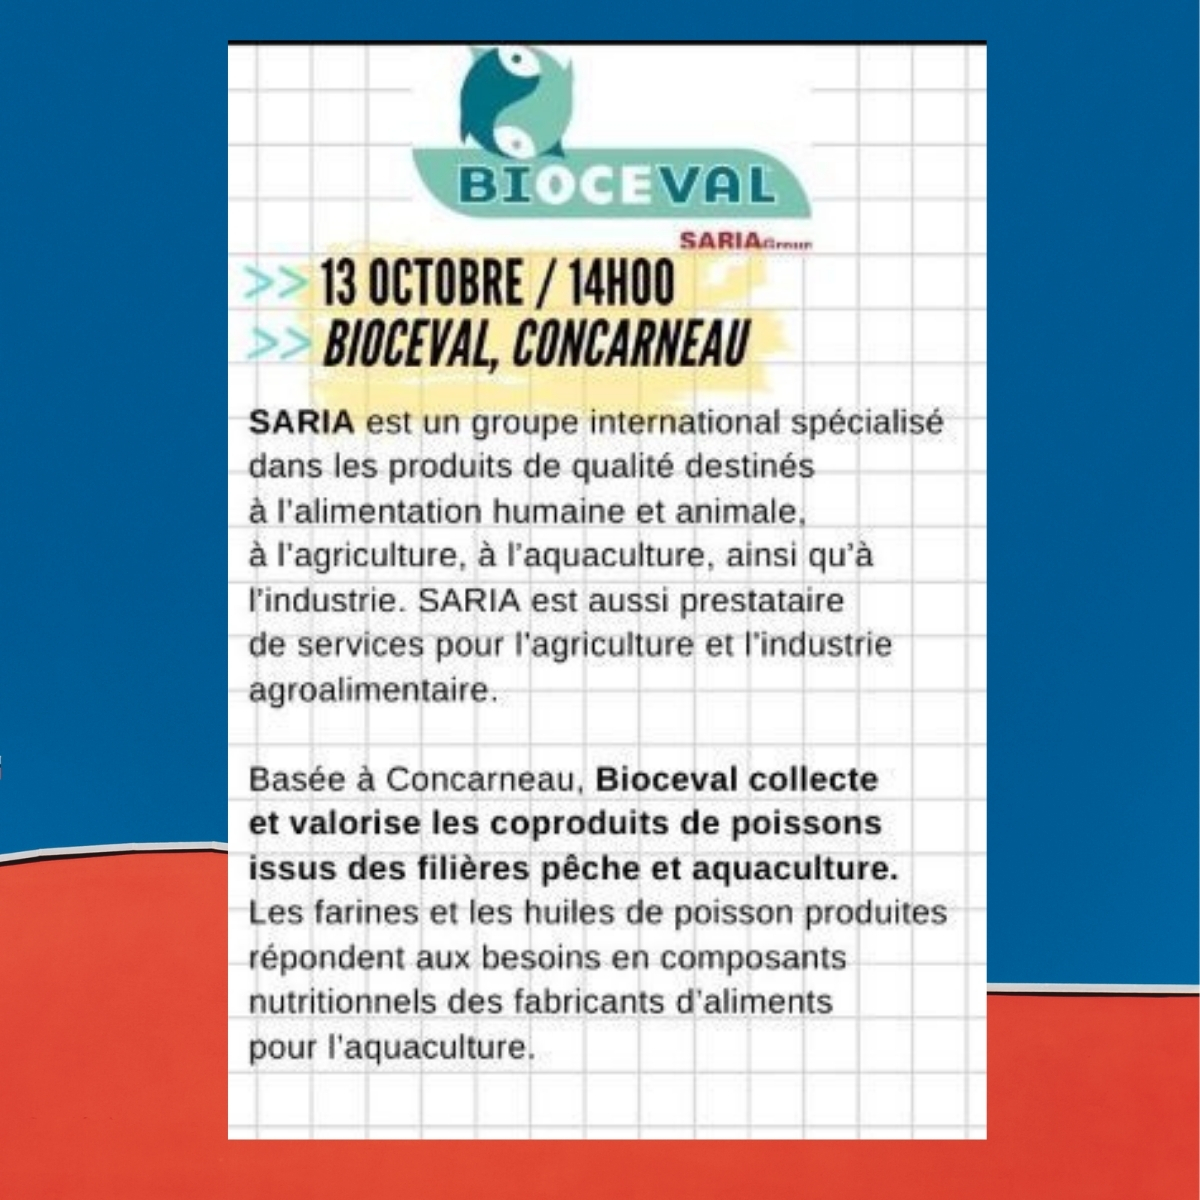 Inscription Bioceval – Mercredi de l’entreprise, 13 oct. 14h00 Concarneau